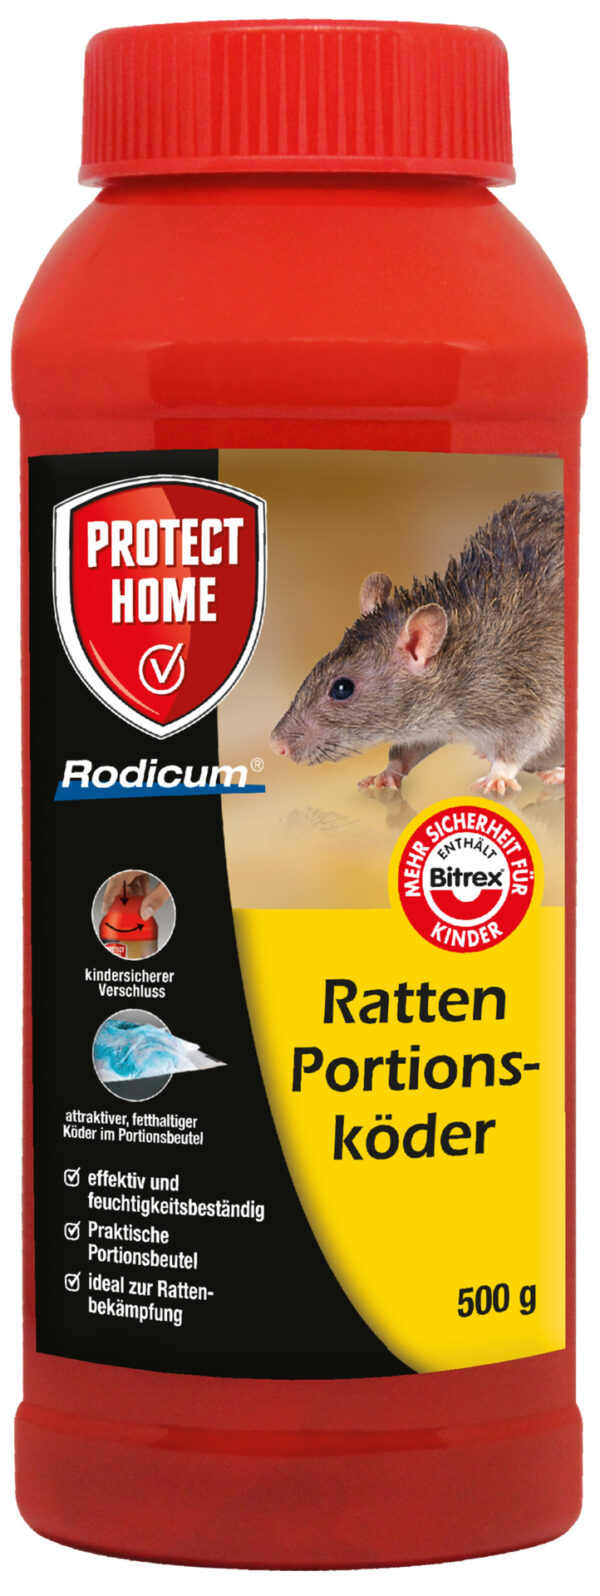 2155762 rodicum ratten portionskoeder